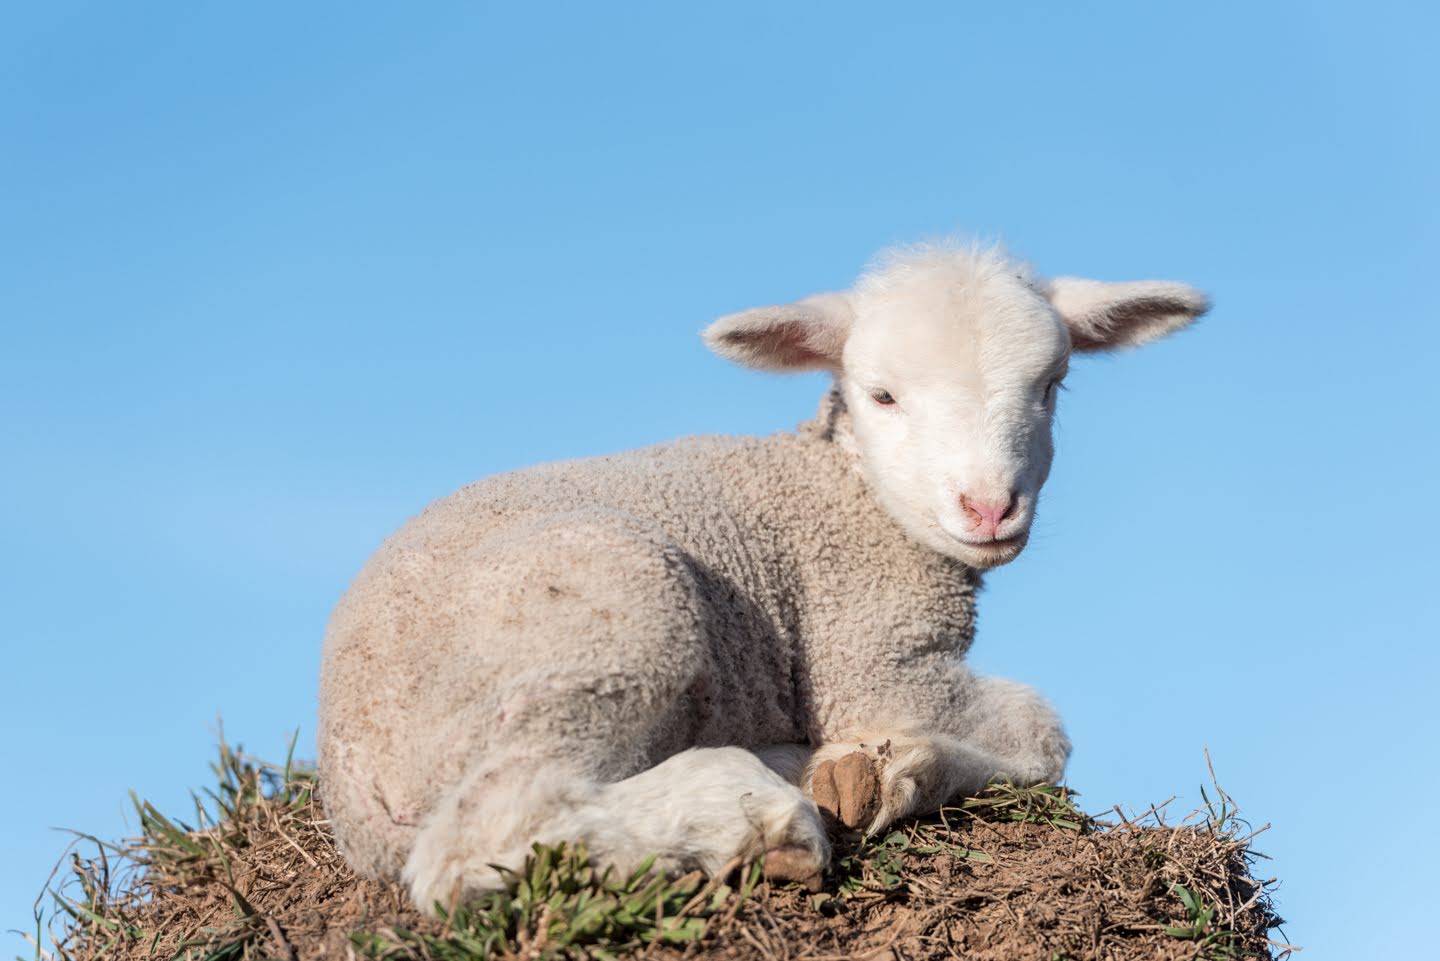 A lamb looking at camera